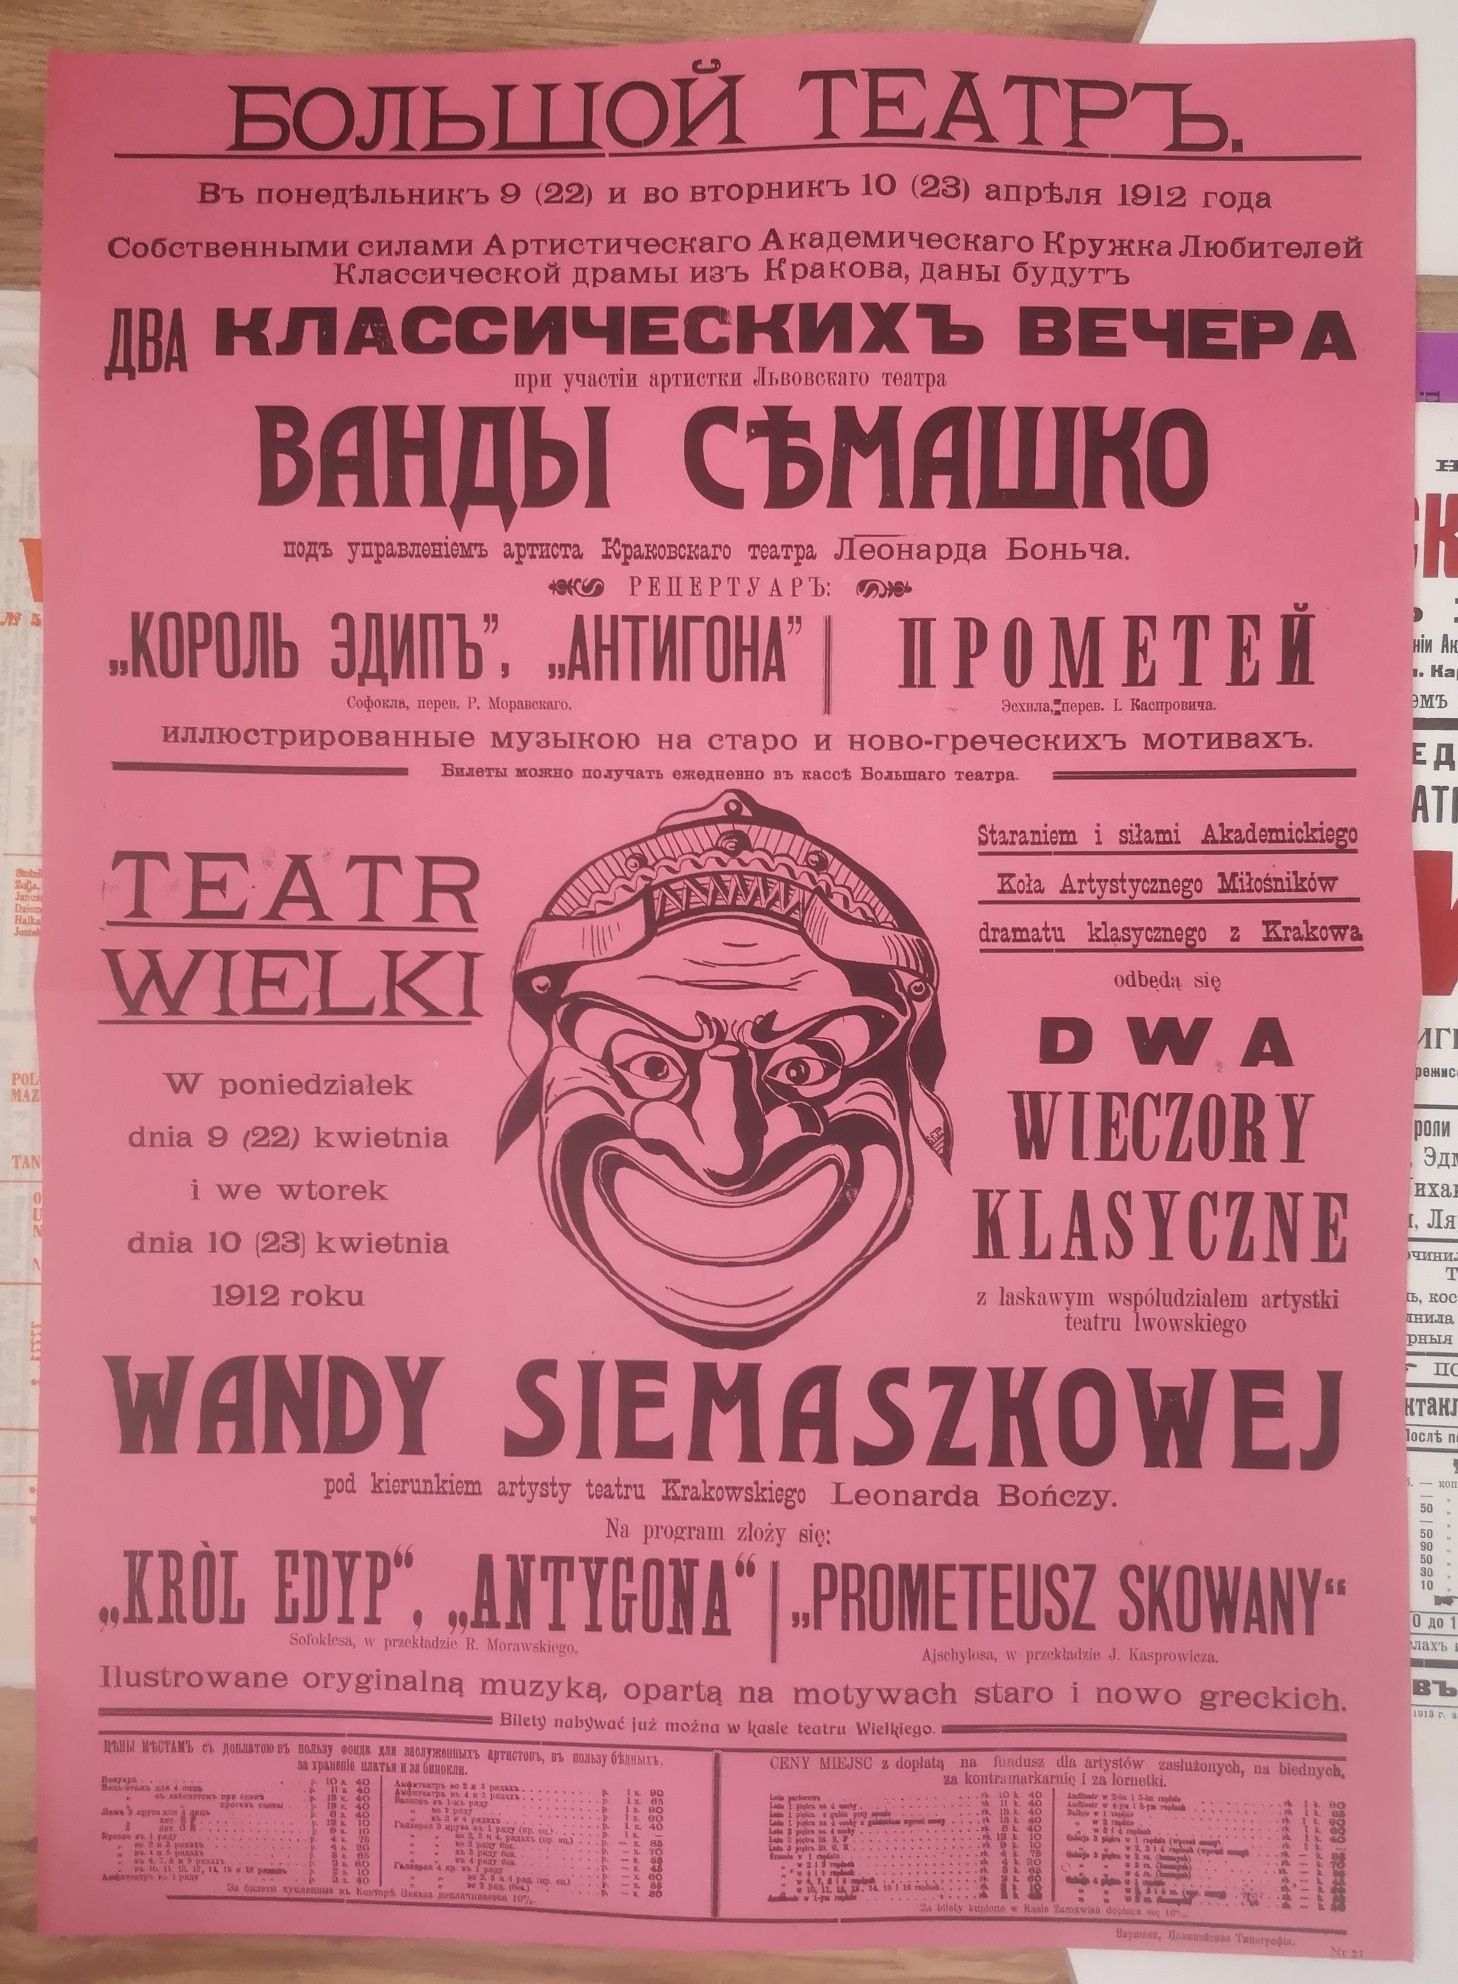 Polski Afisz Teatralny 1765/1939 cała teka